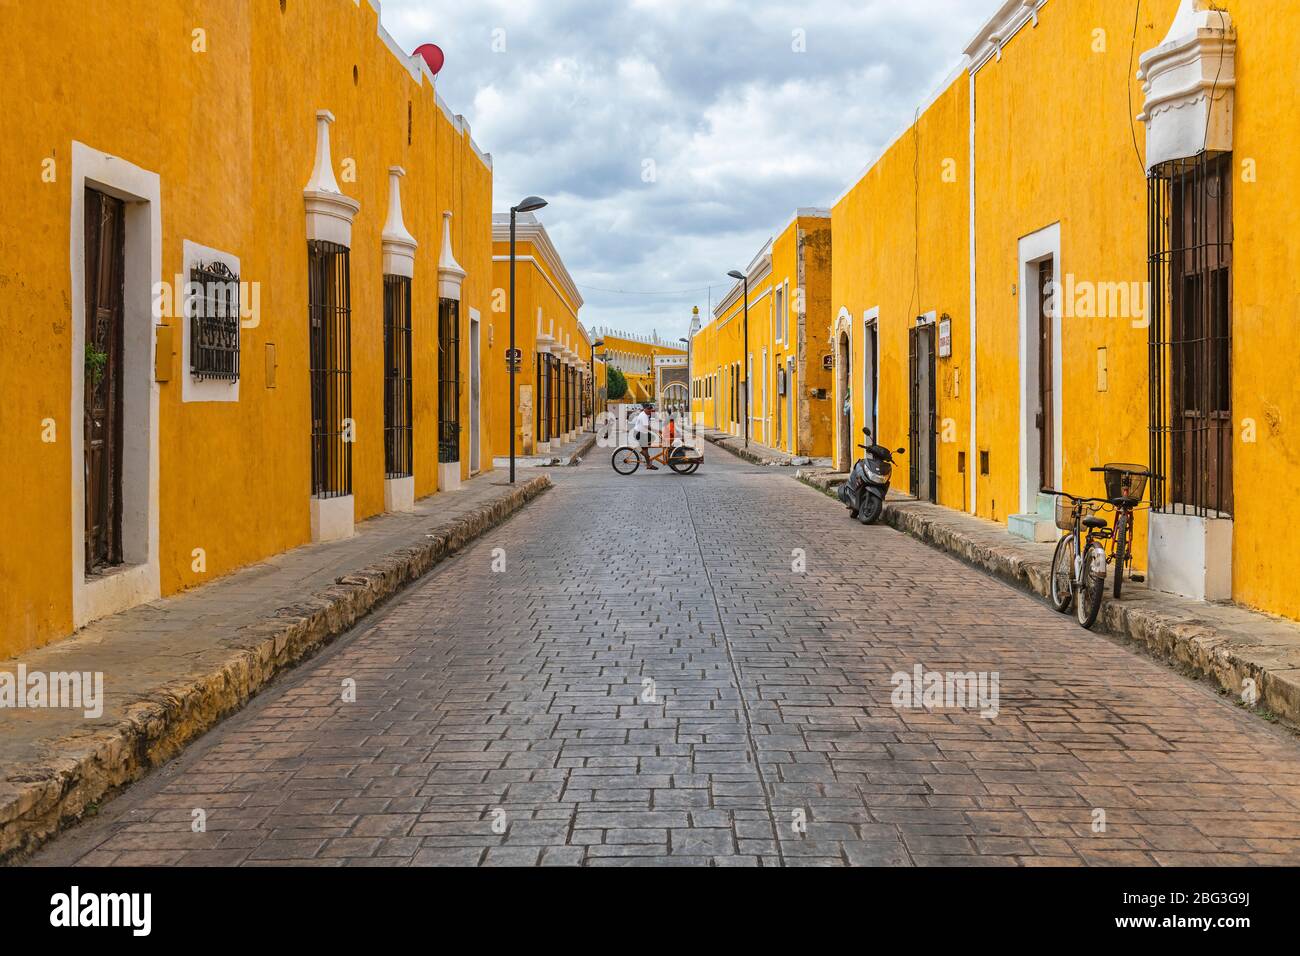 Paesaggio urbano con persone su un triciclo nelle colorate strade gialle con architettura in stile coloniale, Izamal, Messico. Foto Stock